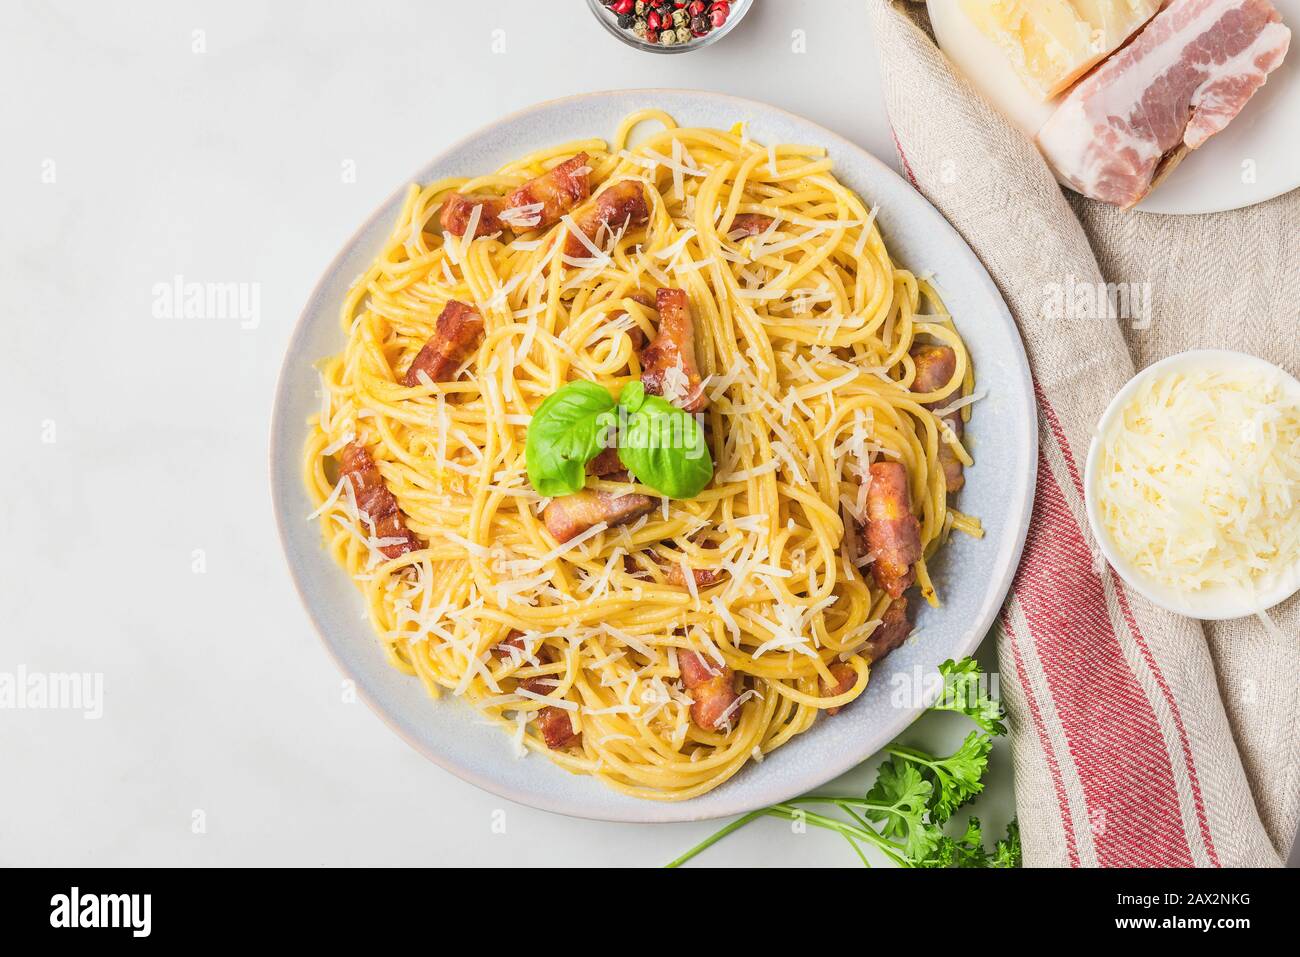 Pâtes italiennes carbonara faites de spaghetti, bacon, parmesan et basilic dans une assiette sur table en marbre blanc. Vue sur le dessus Banque D'Images